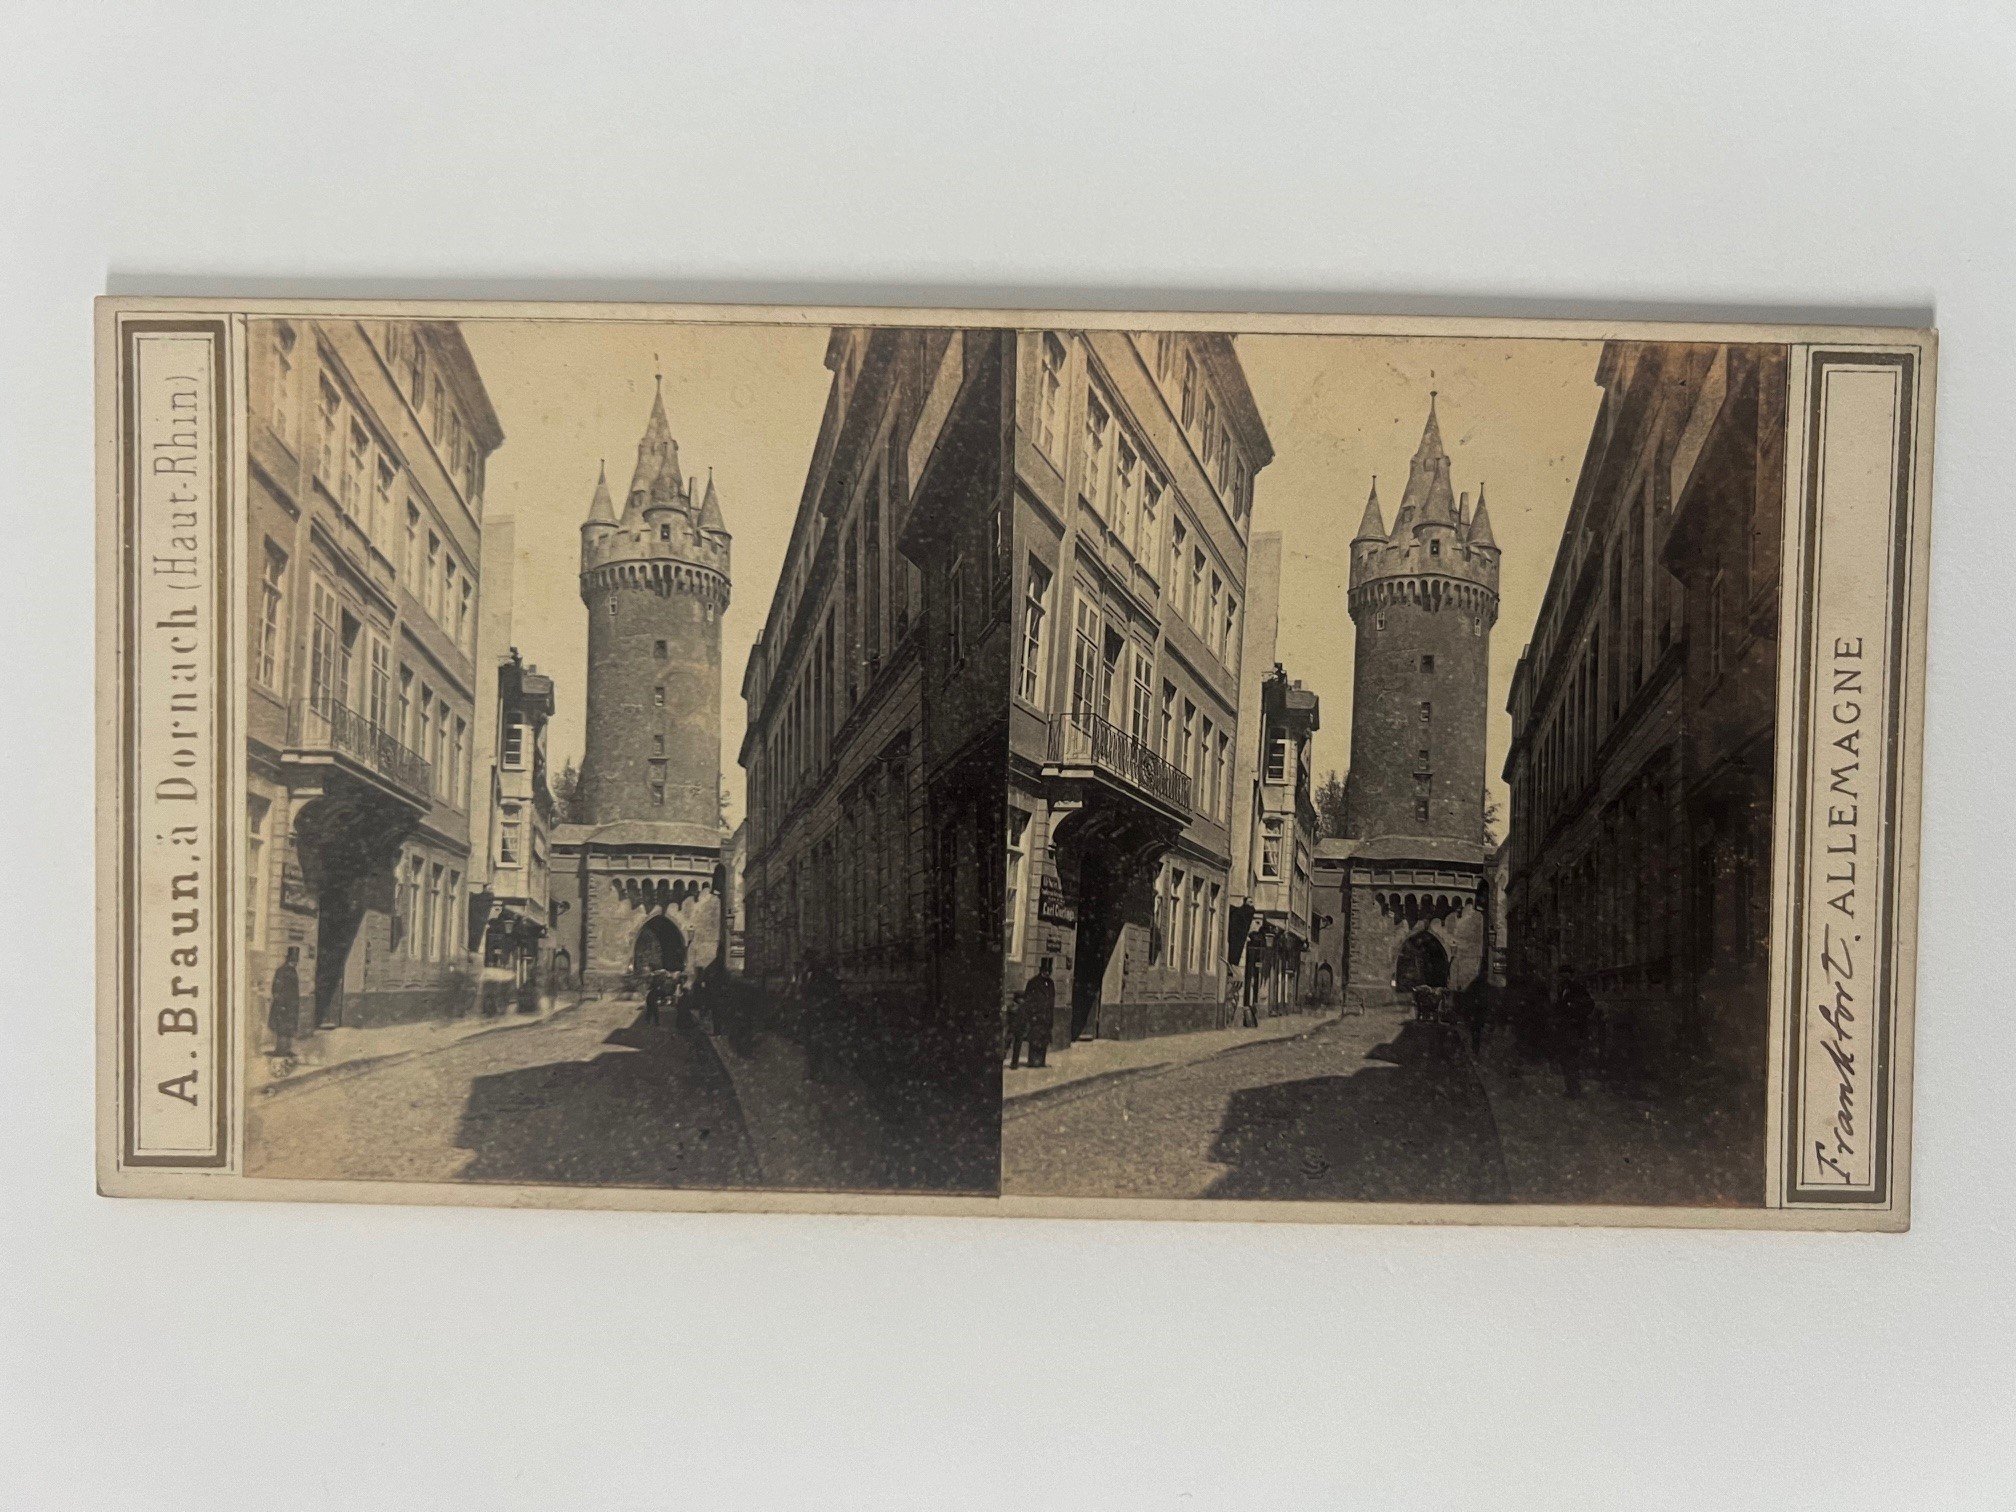 Stereobild, Adolphe Braun, Frankfurt, Nr. 4307, Der Eschenheimer Thurm, dat. 1865. (Taunus-Rhein-Main - Regionalgeschichtliche Sammlung Dr. Stefan Naas CC BY-NC-SA)